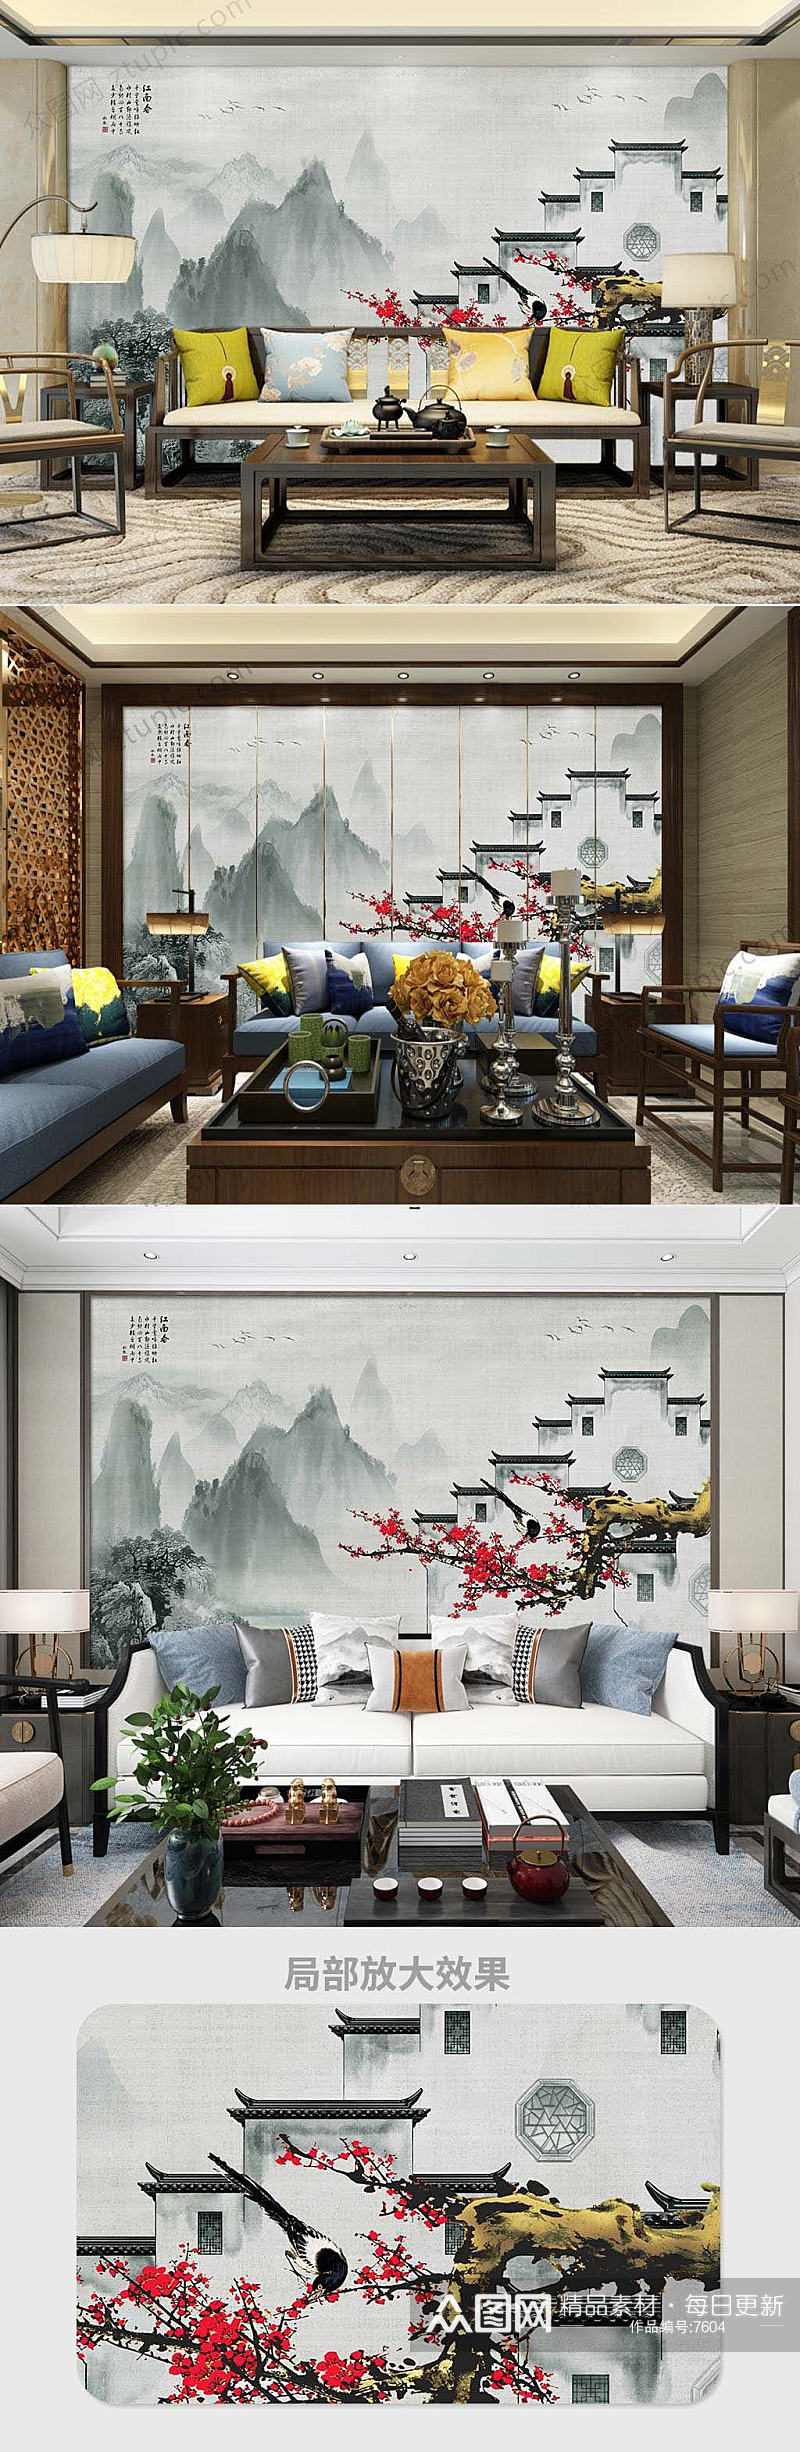 新中式徽派建筑背景墙素材